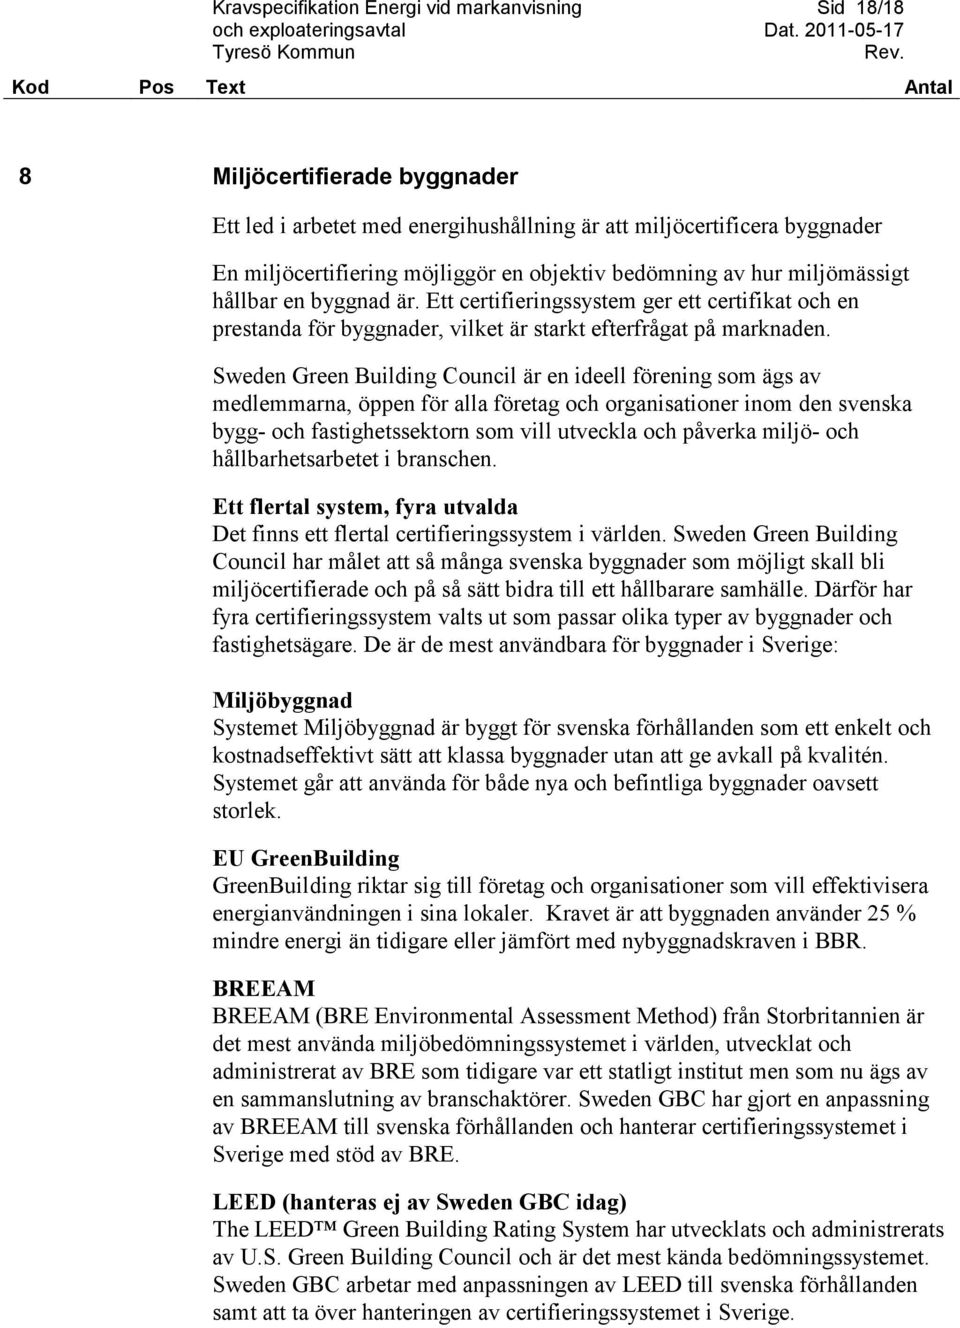 Sweden Green Building Council är en ideell förening som ägs av medlemmarna, öppen för alla företag och organisationer inom den svenska bygg- och fastighetssektorn som vill utveckla och påverka miljö-